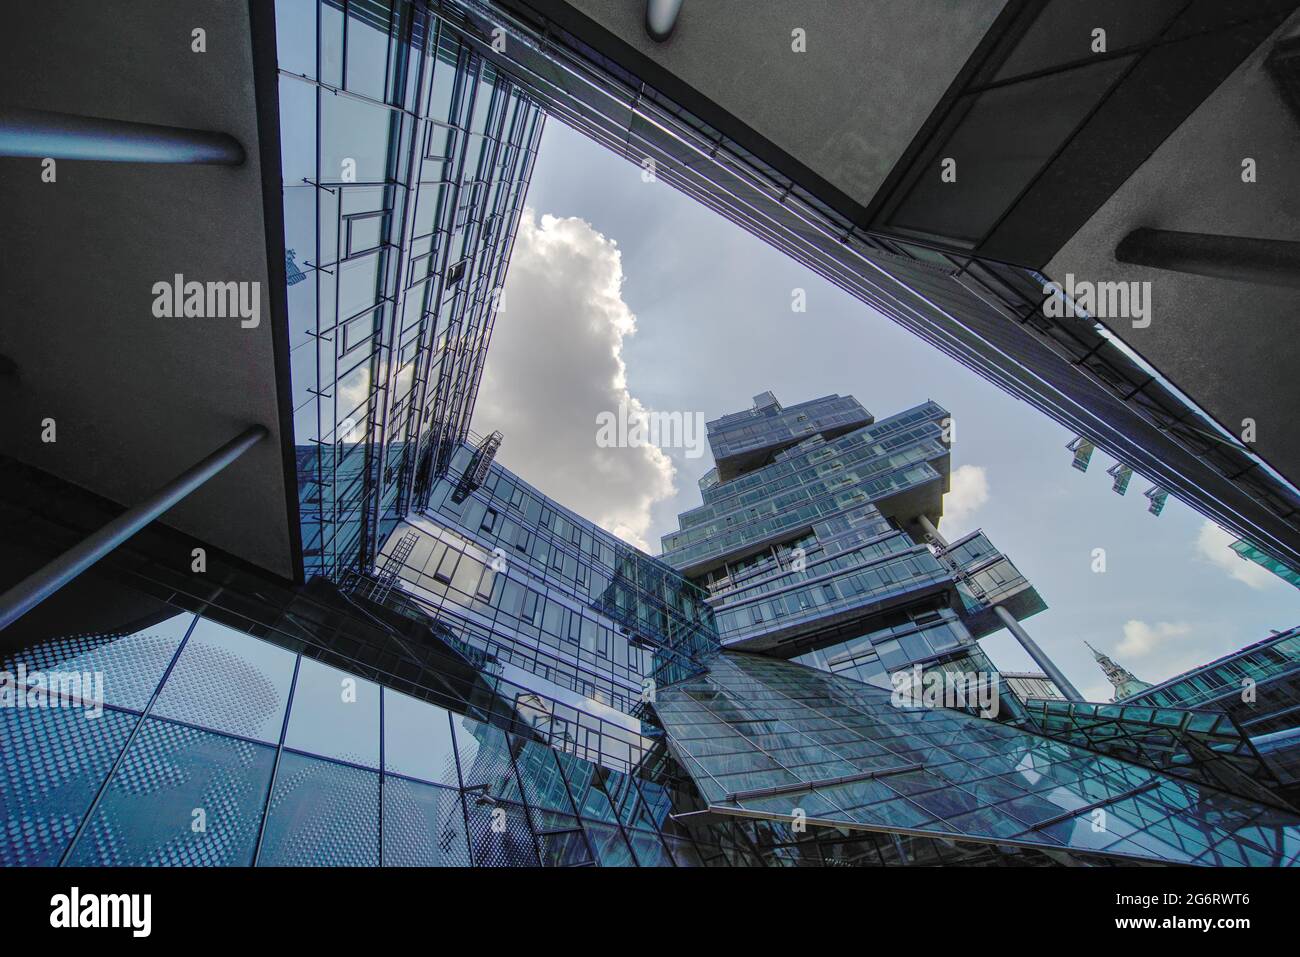 Edificio administrativo futurista y moderno de cristal del Bank Nord LB, banco estatal del norte de Alemania, en el centro de la capital del estado, Hannover, Alemania, julio de 3 Foto de stock